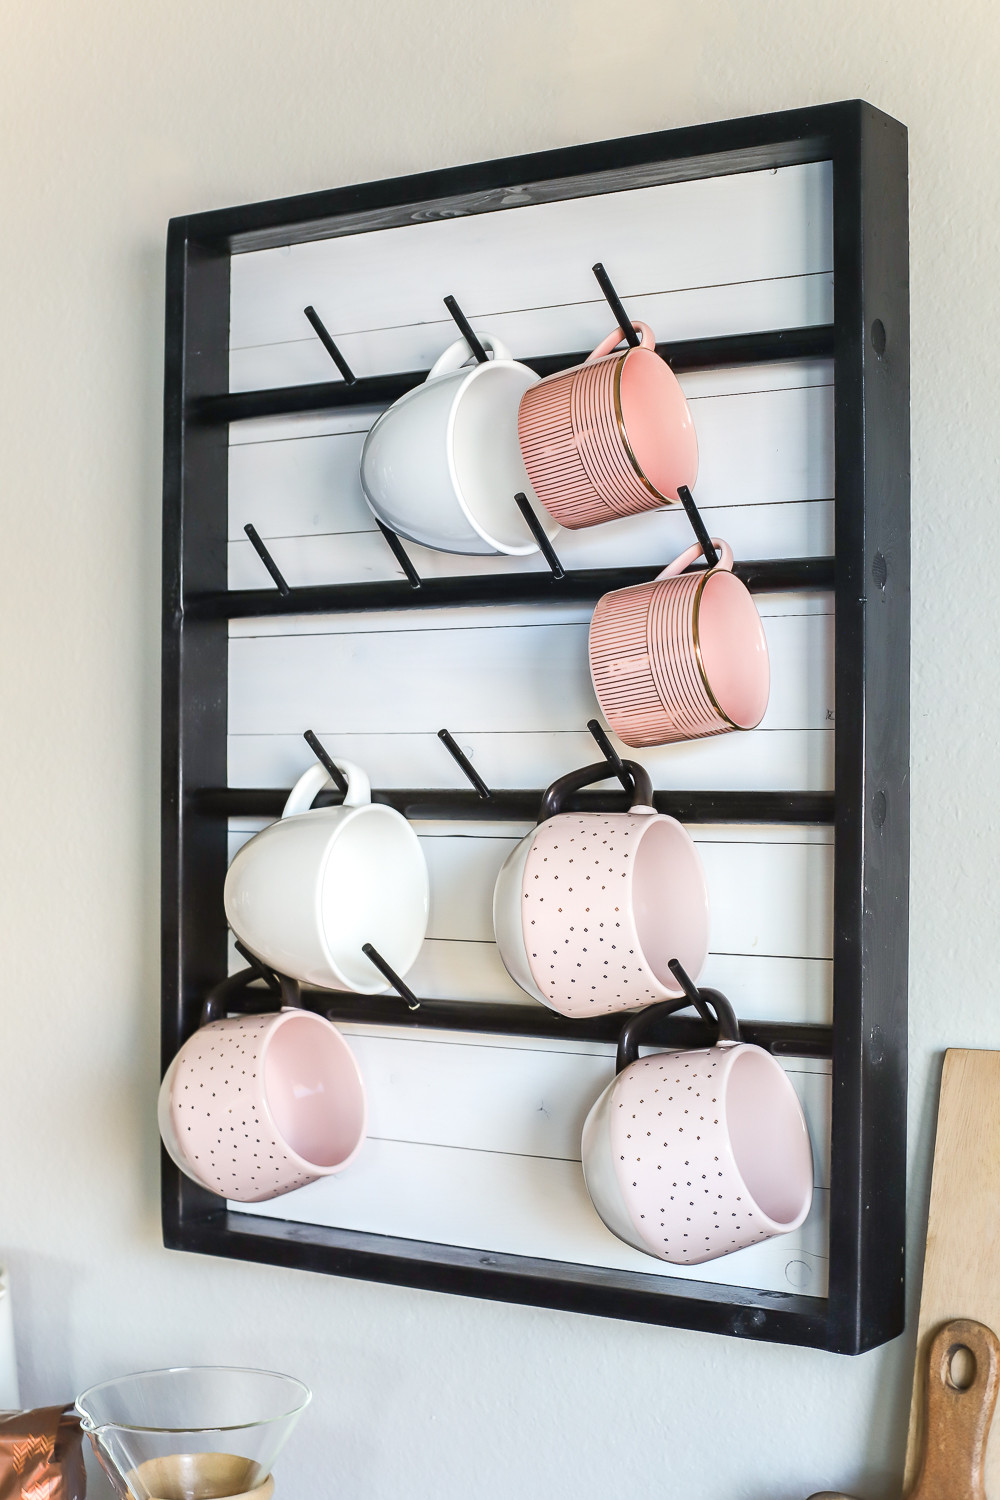 DIY Coffee Mug Rack
 How To Make A DIY Wall Mounted Coffee Mug Display Rack